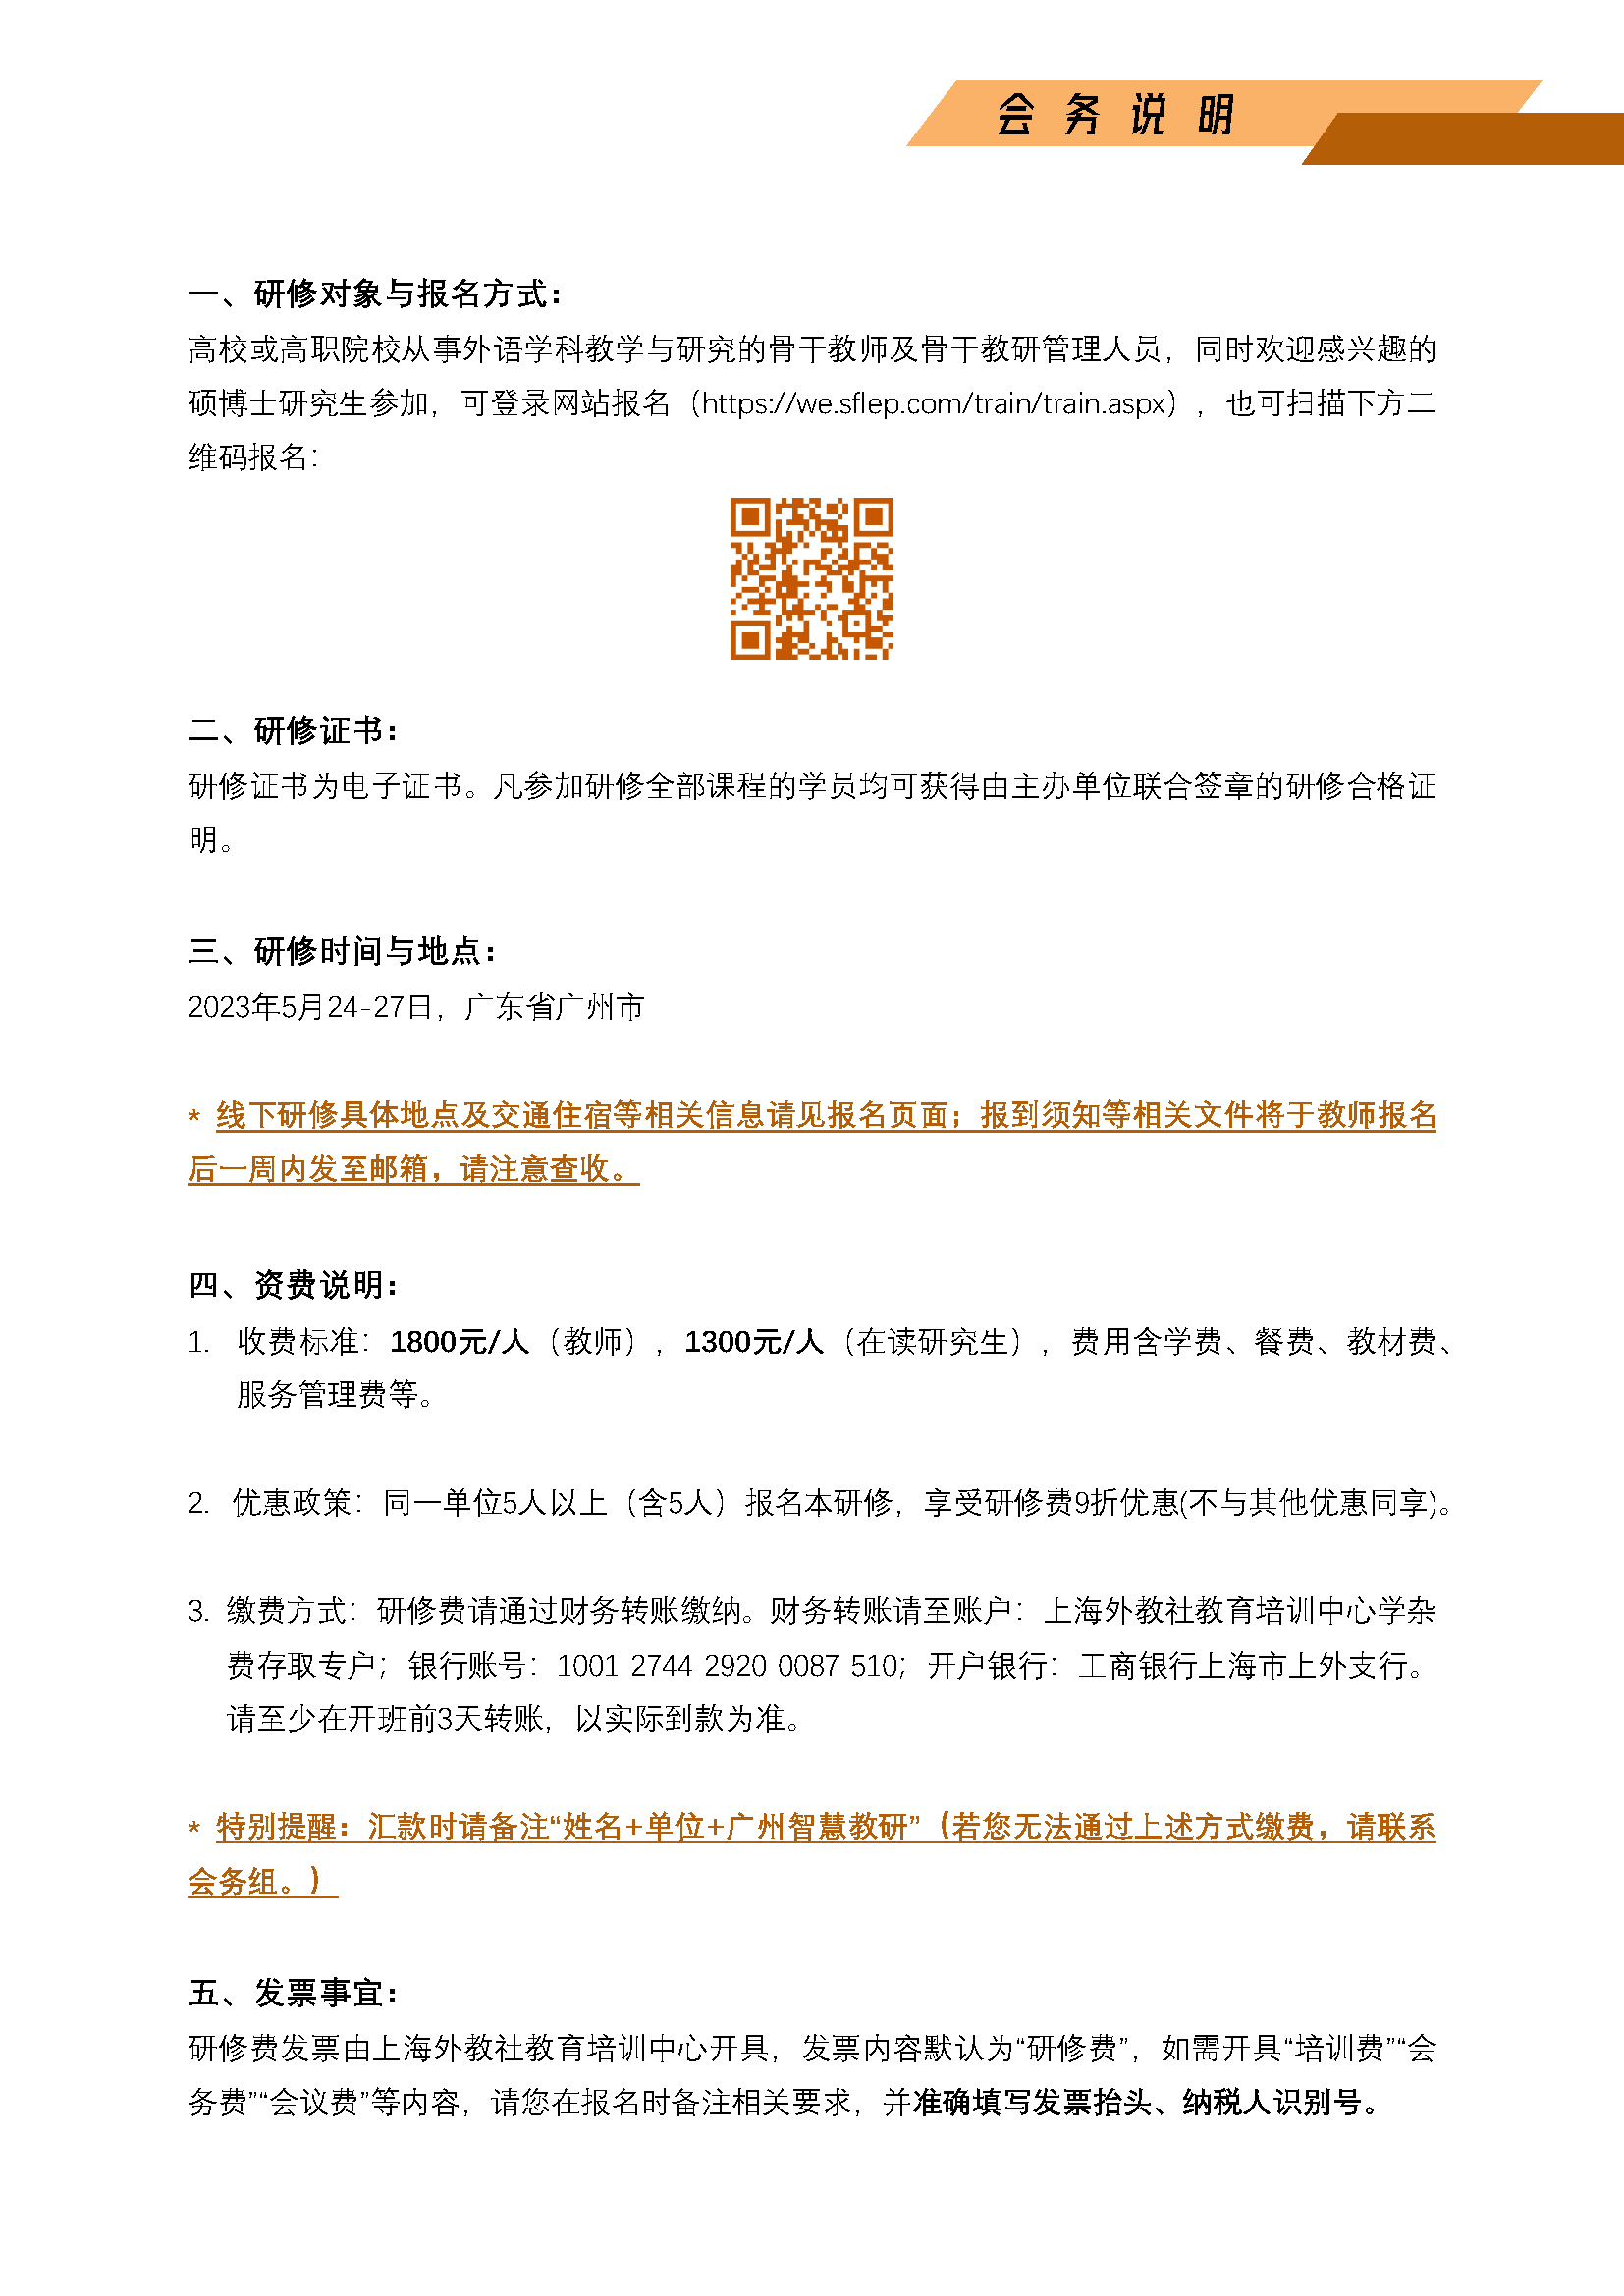 广州举办--面向AIGC的智慧教研能力提升系列研修班第一期_页面_5.png